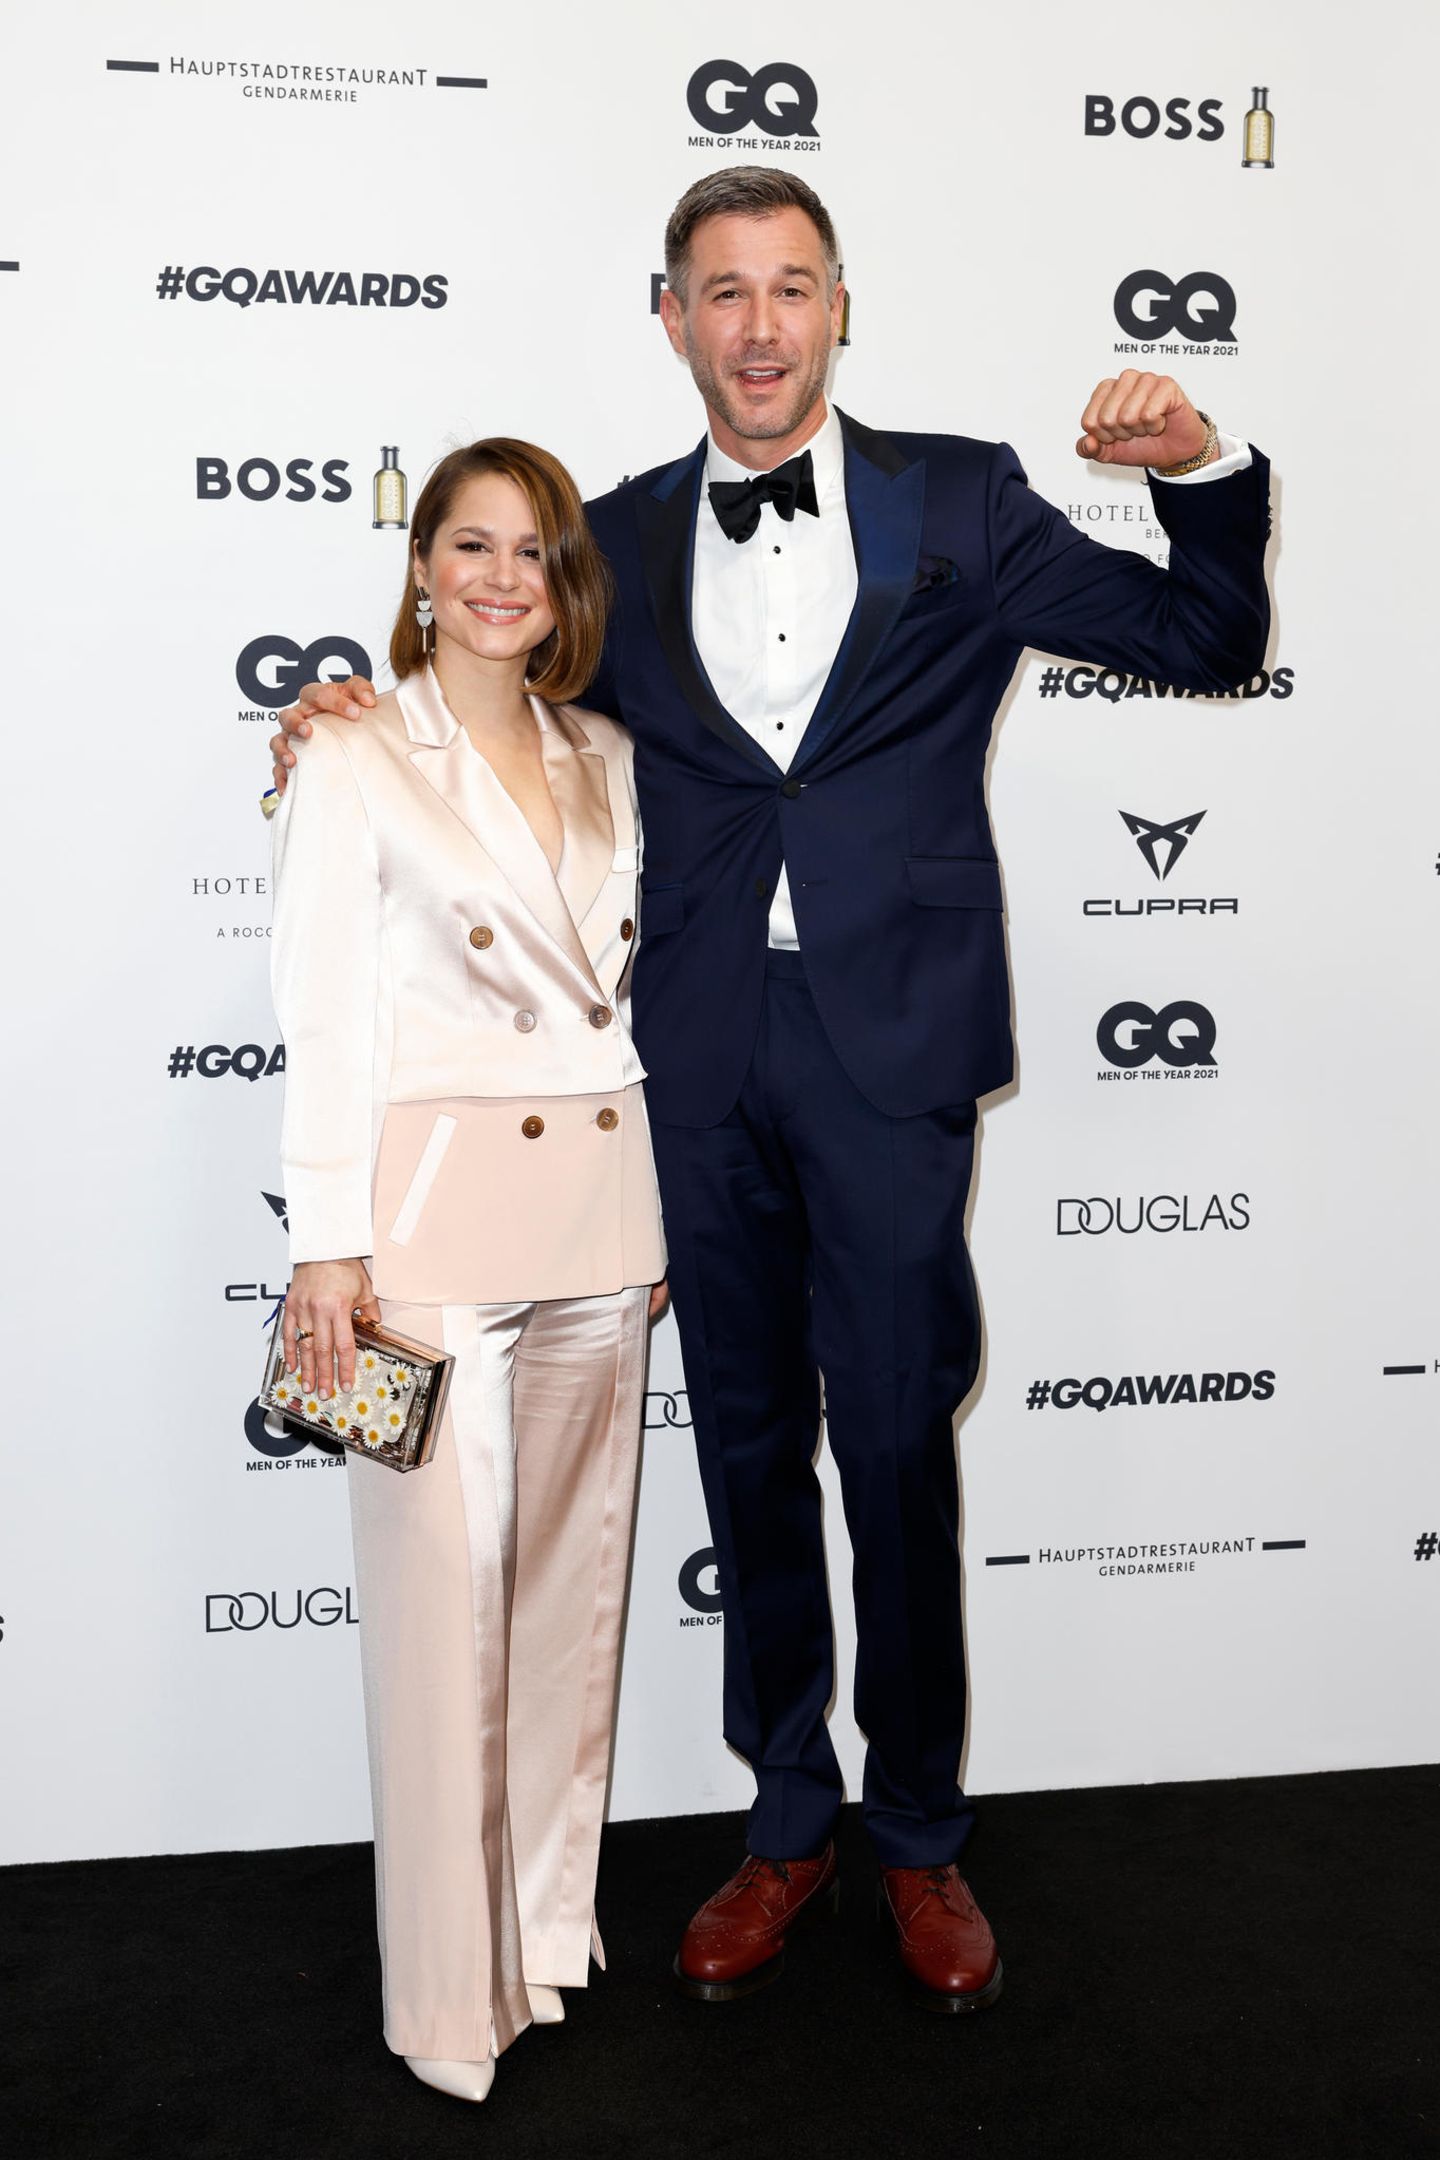 Cristina do Rego im pastellzarten Seiden-Look und Jochen Schropp im klassischen Anzug in Dunkelblau freuen sich schon auf die Preisverleihung.